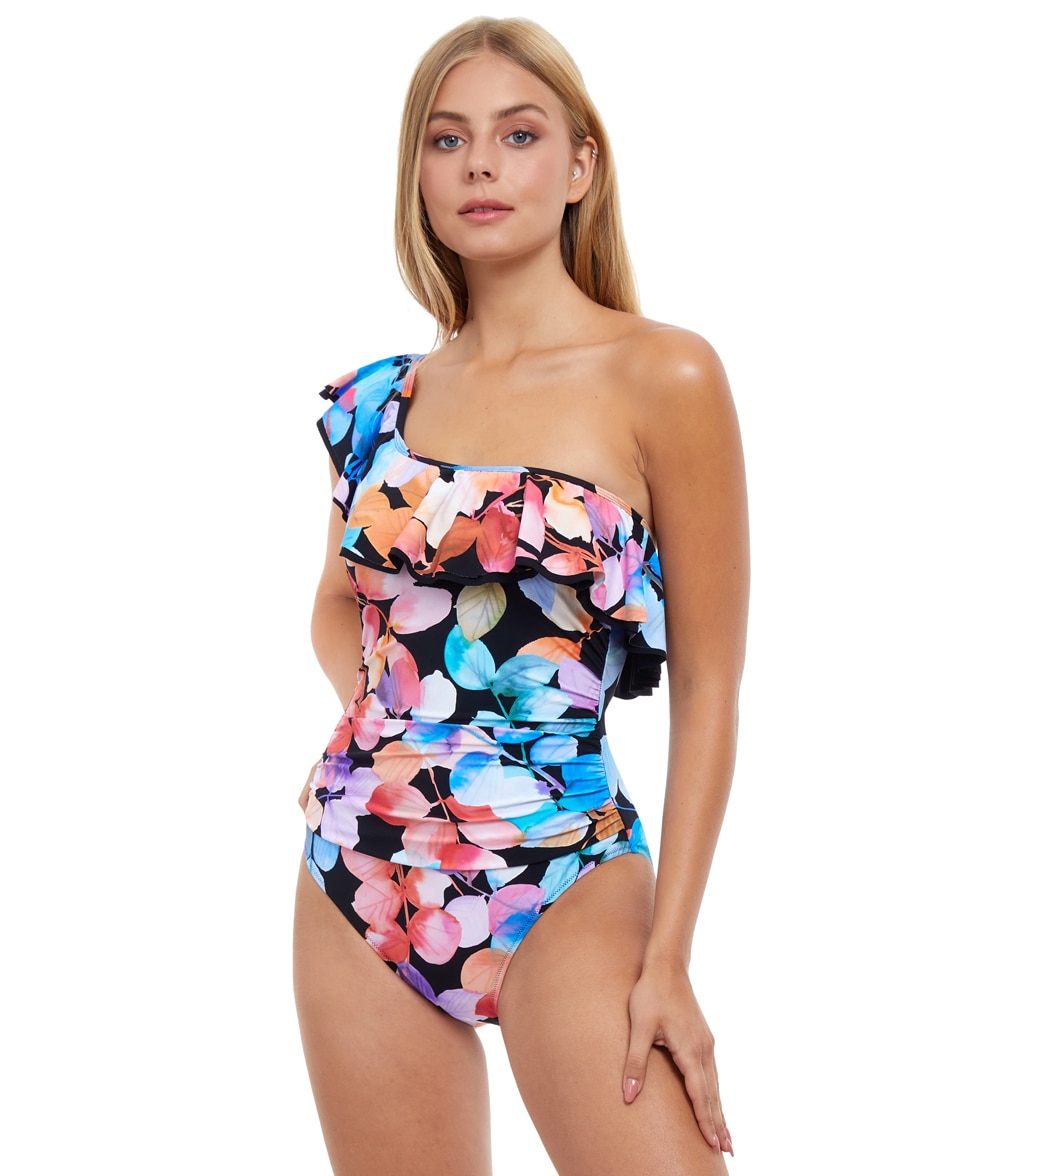 Profile By Gottex Woman's Color Rush One Shoulder Piece Swimsuit - Multi Black 12 - Swimoutlet.com